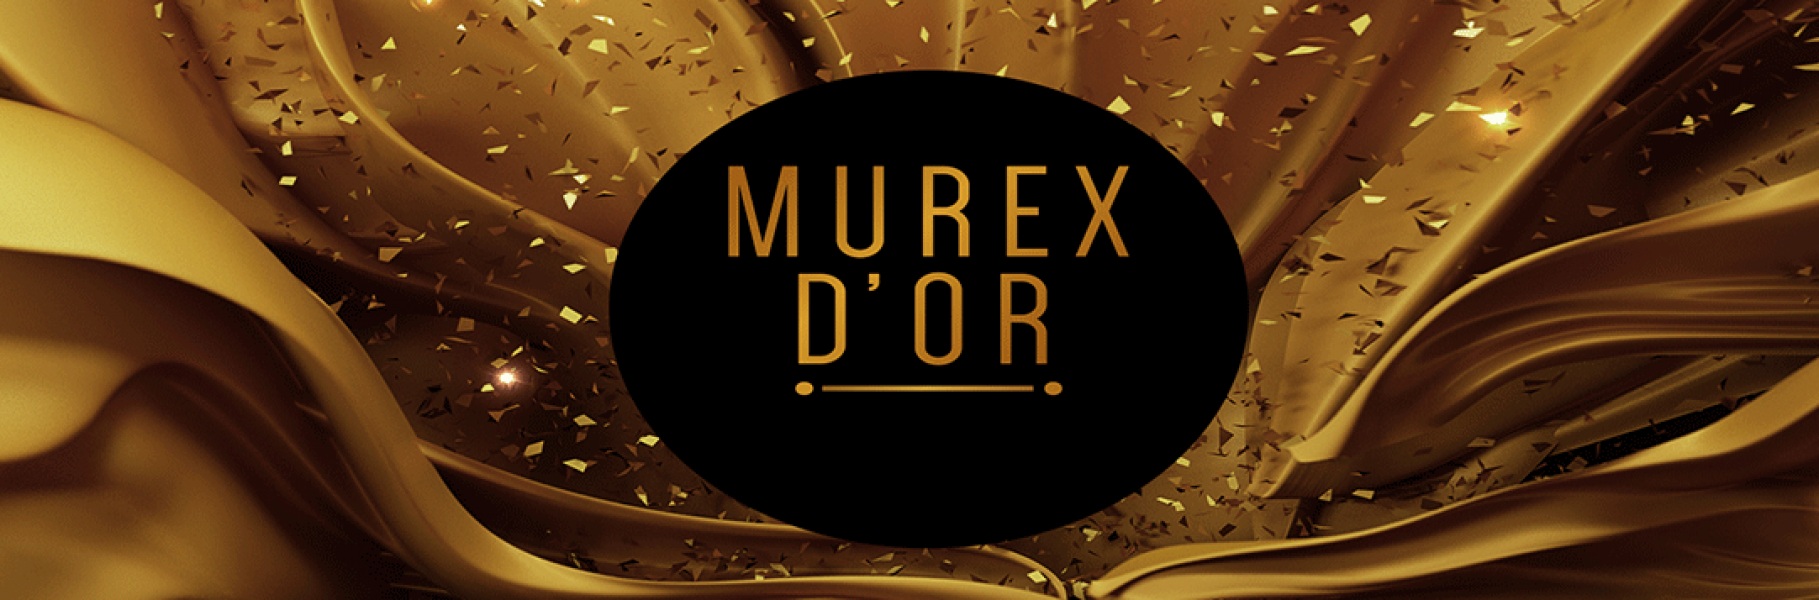 murex_dor_slide2